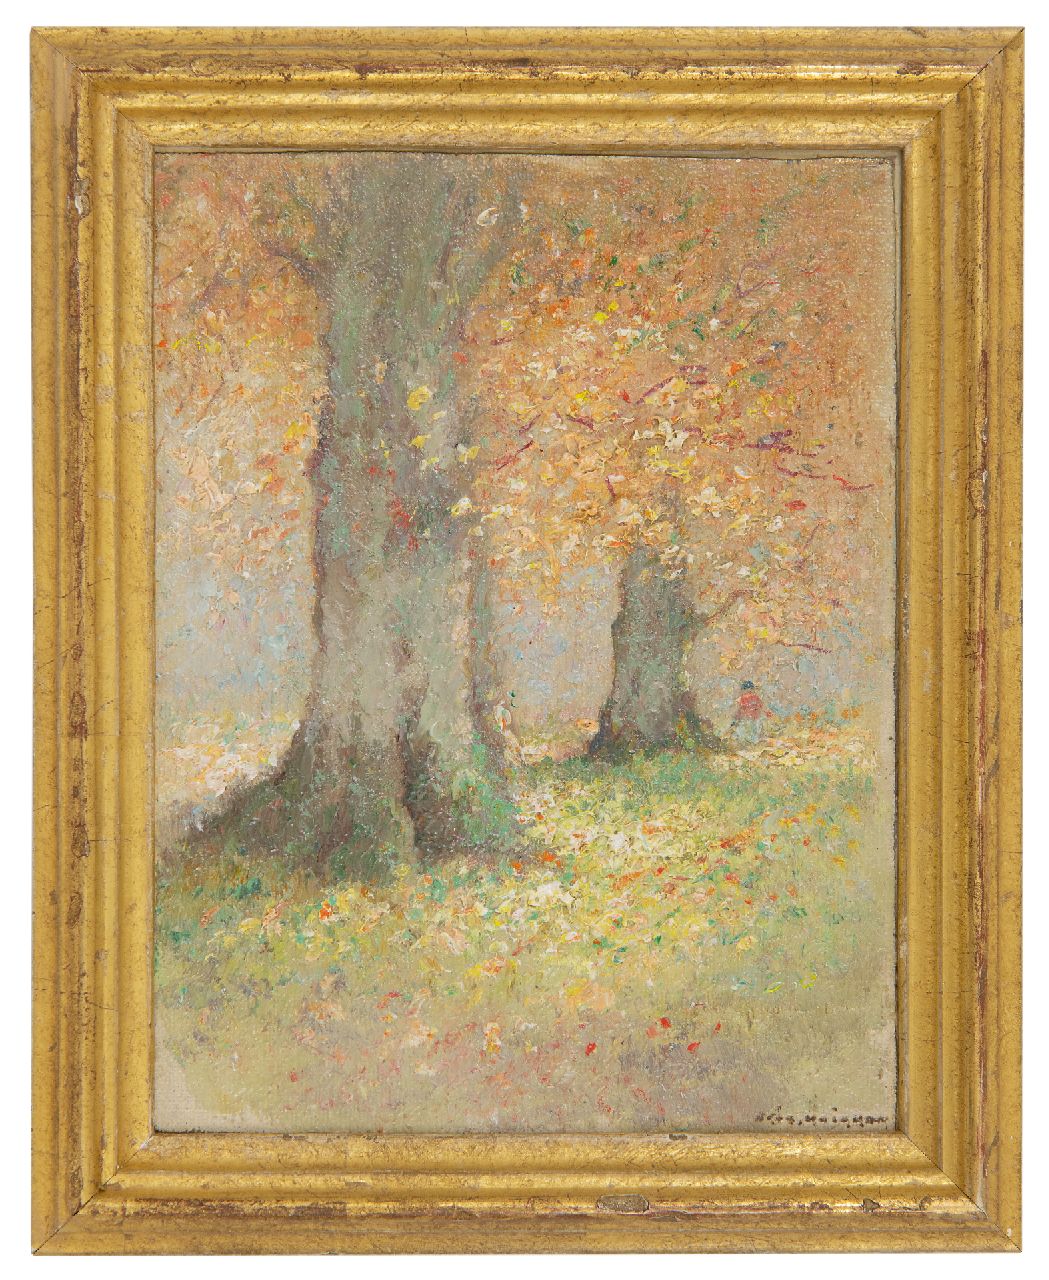 Knikker A.  | Aris Knikker | Schilderijen te koop aangeboden | Beuken in de herfst, olieverf op doek op board 15,4 x 11,6 cm, gesigneerd rechtsonder